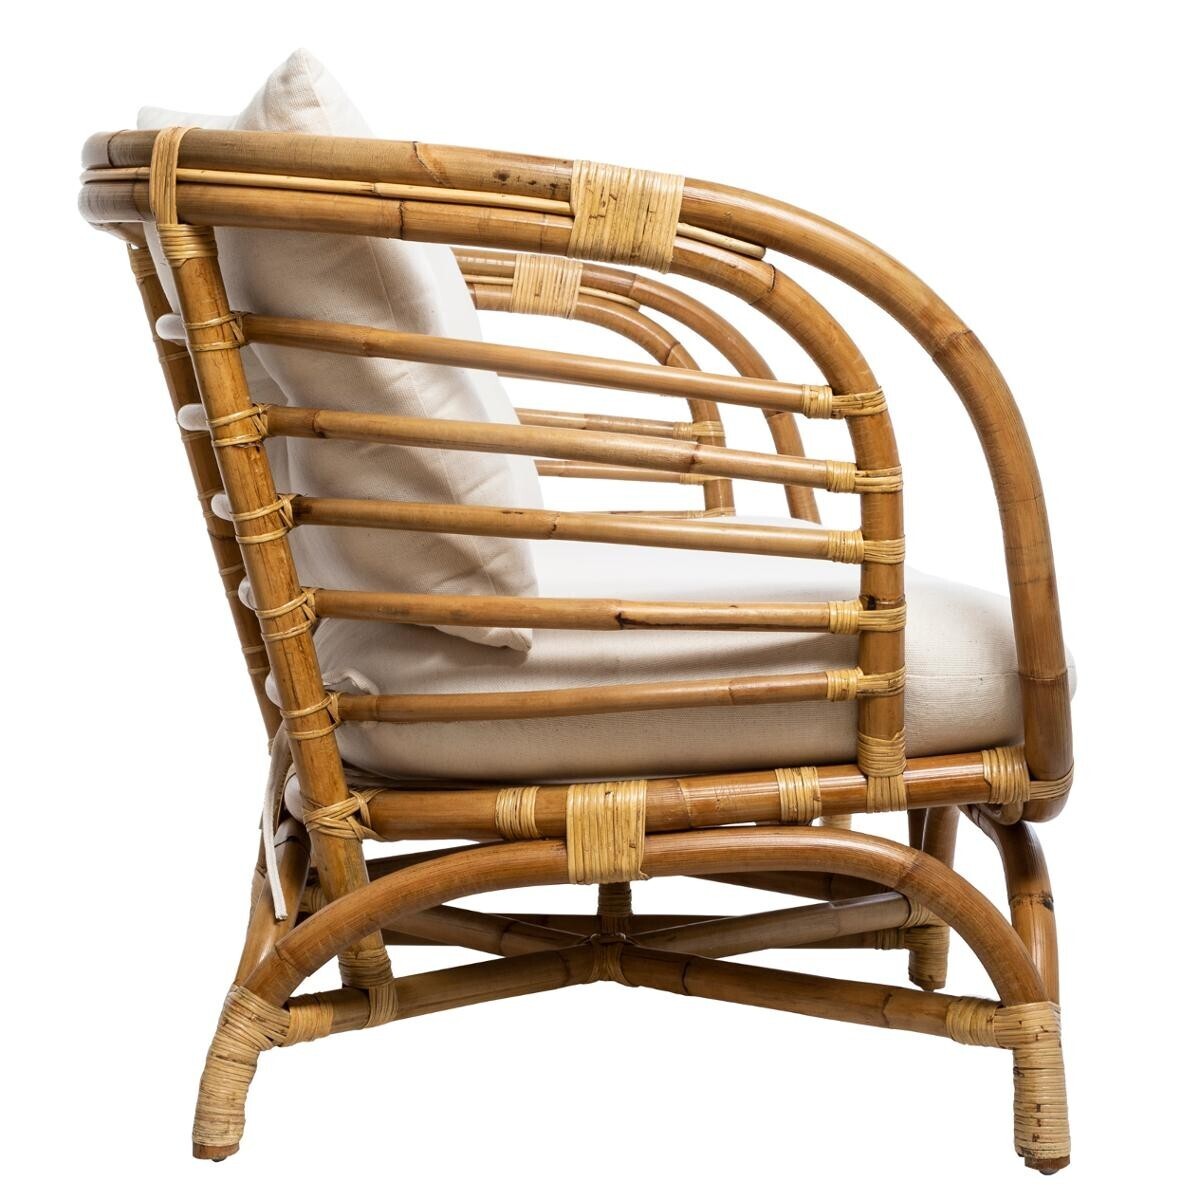 BEAU Savannah rattan armchair - L84xD75xH74cm - Brown